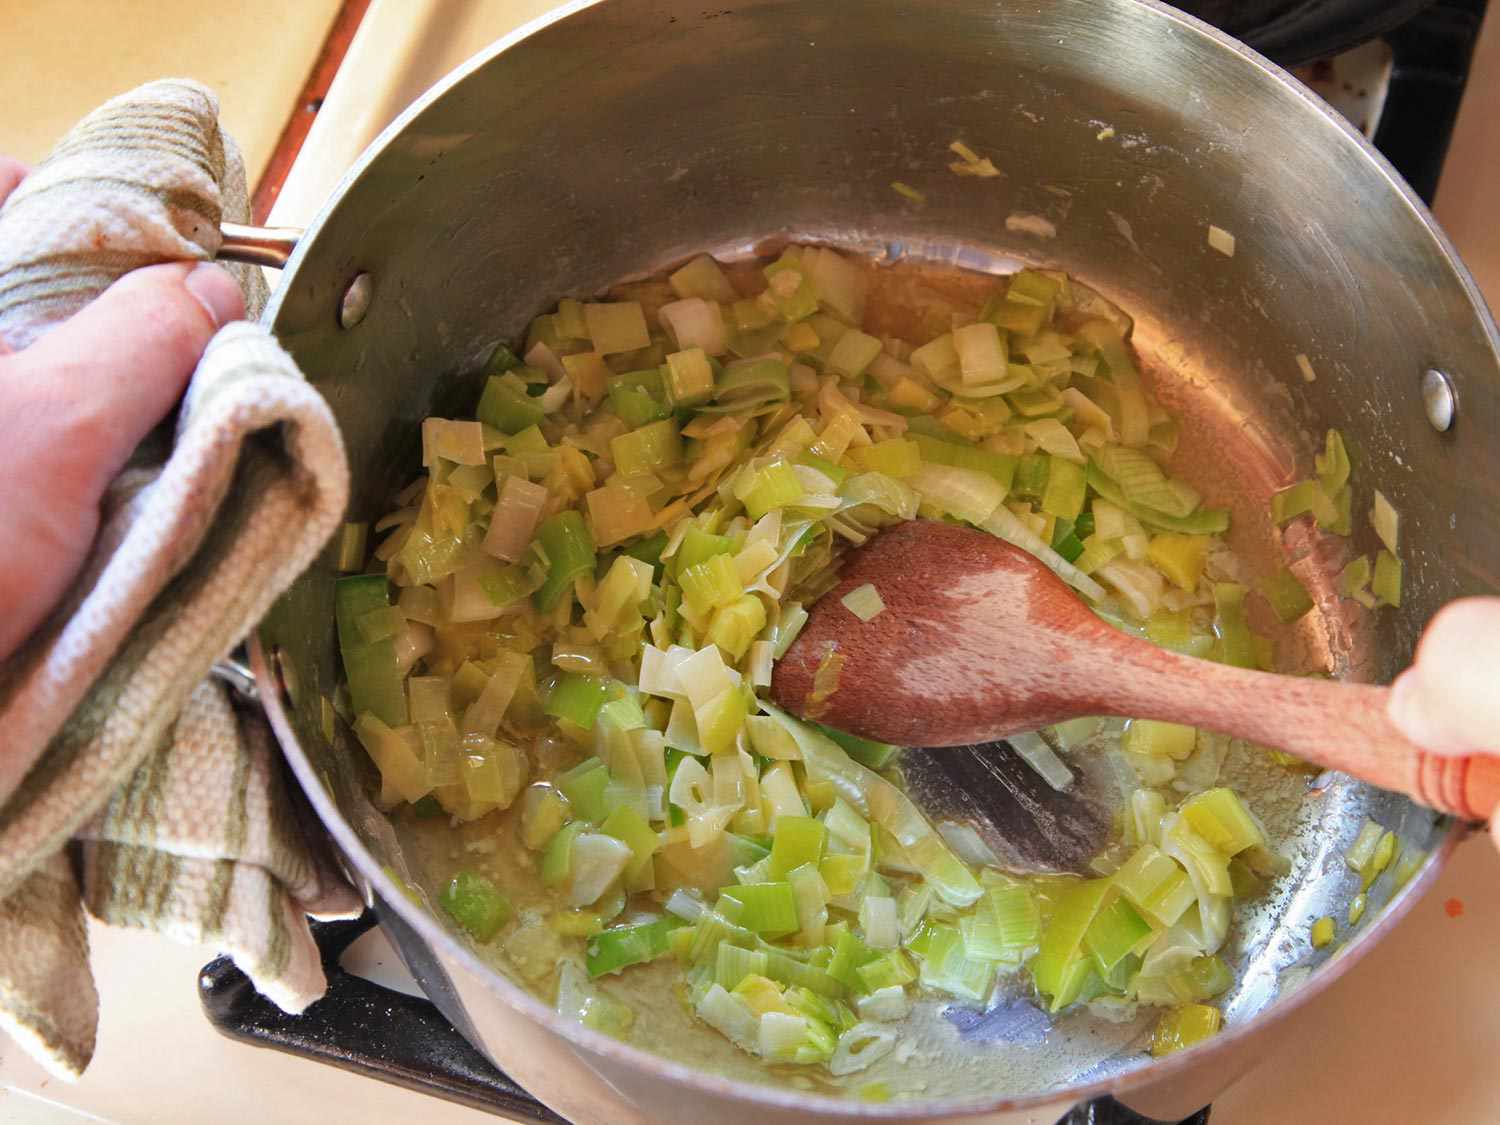 20150105-potato-leek-soup-recipe-02.jpg